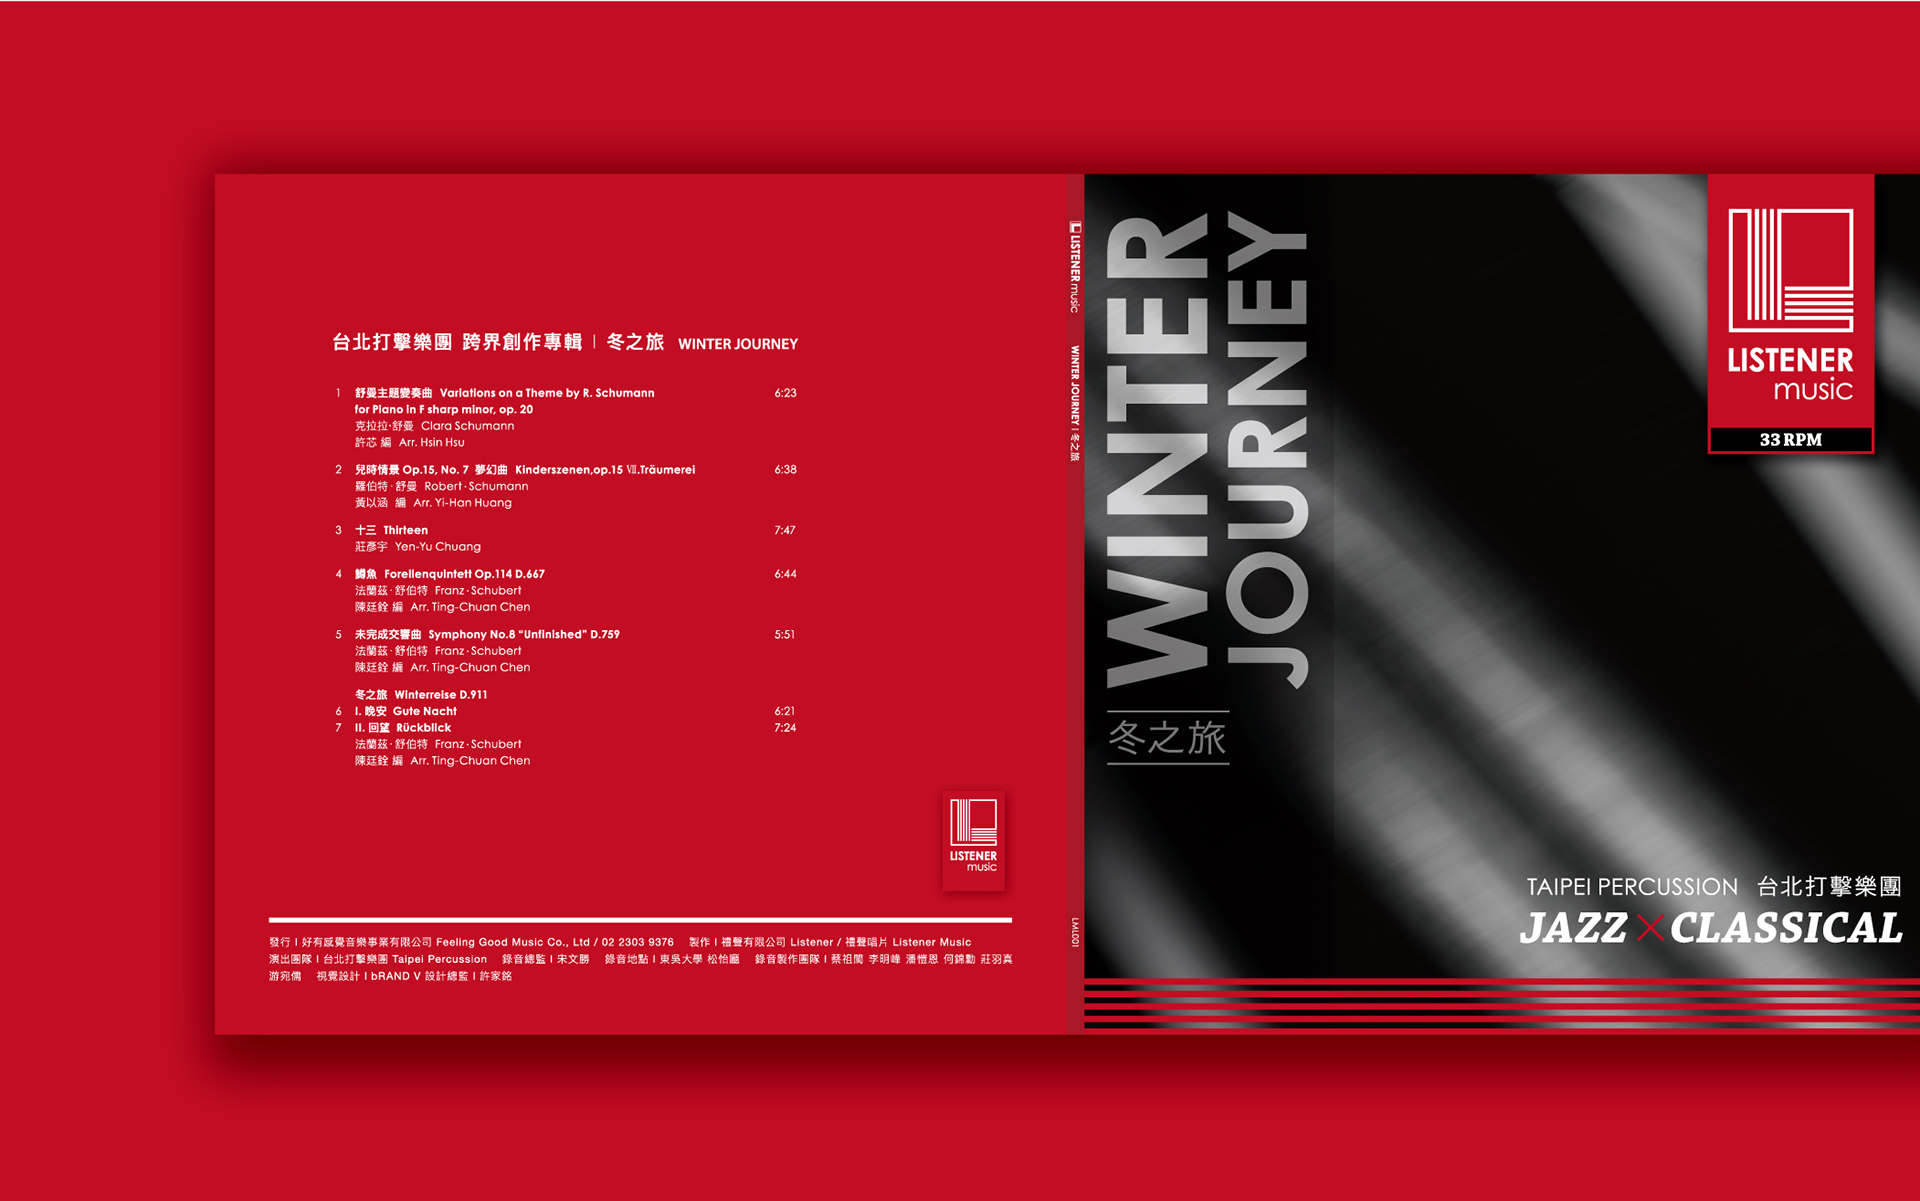 視覺設計｜ 禮聲音樂 冬之旅 專輯包裝視覺設計｜ bRANDV 畢爾威品牌設計